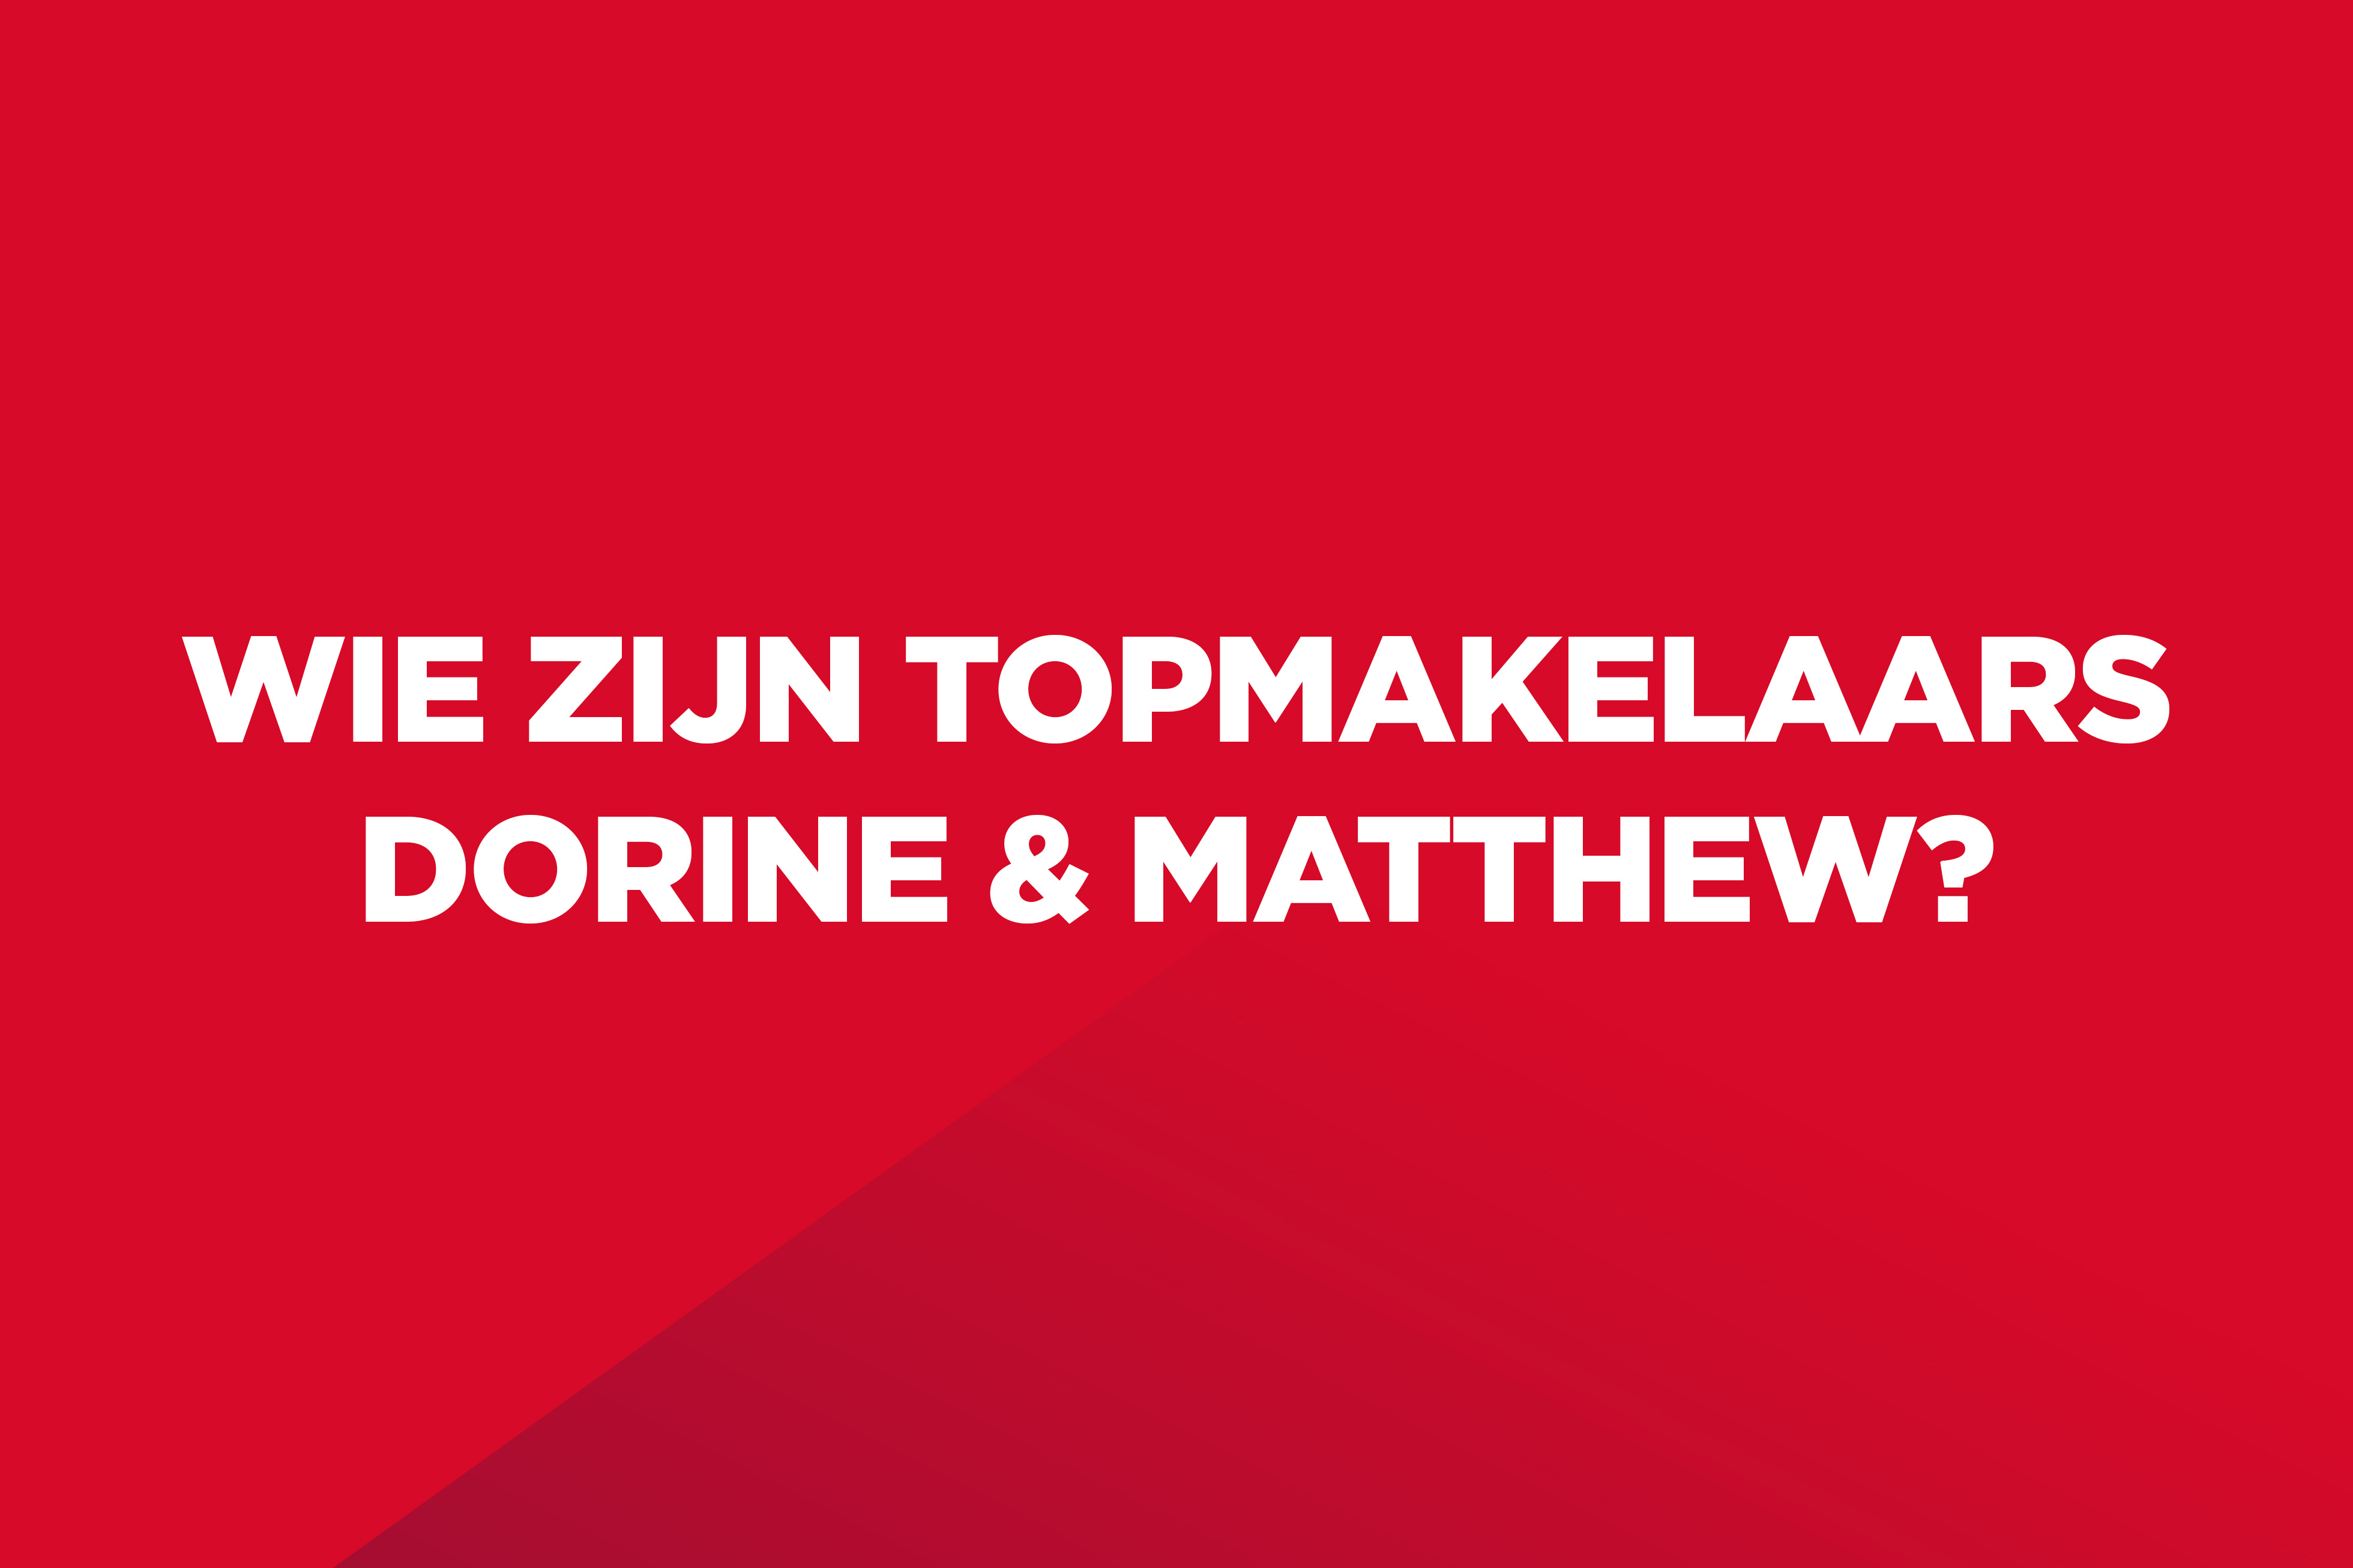 Dit is een rood kleurvlak met witte tekst op: "Wie zijn Topmakelaars Dorine en Matthew?".